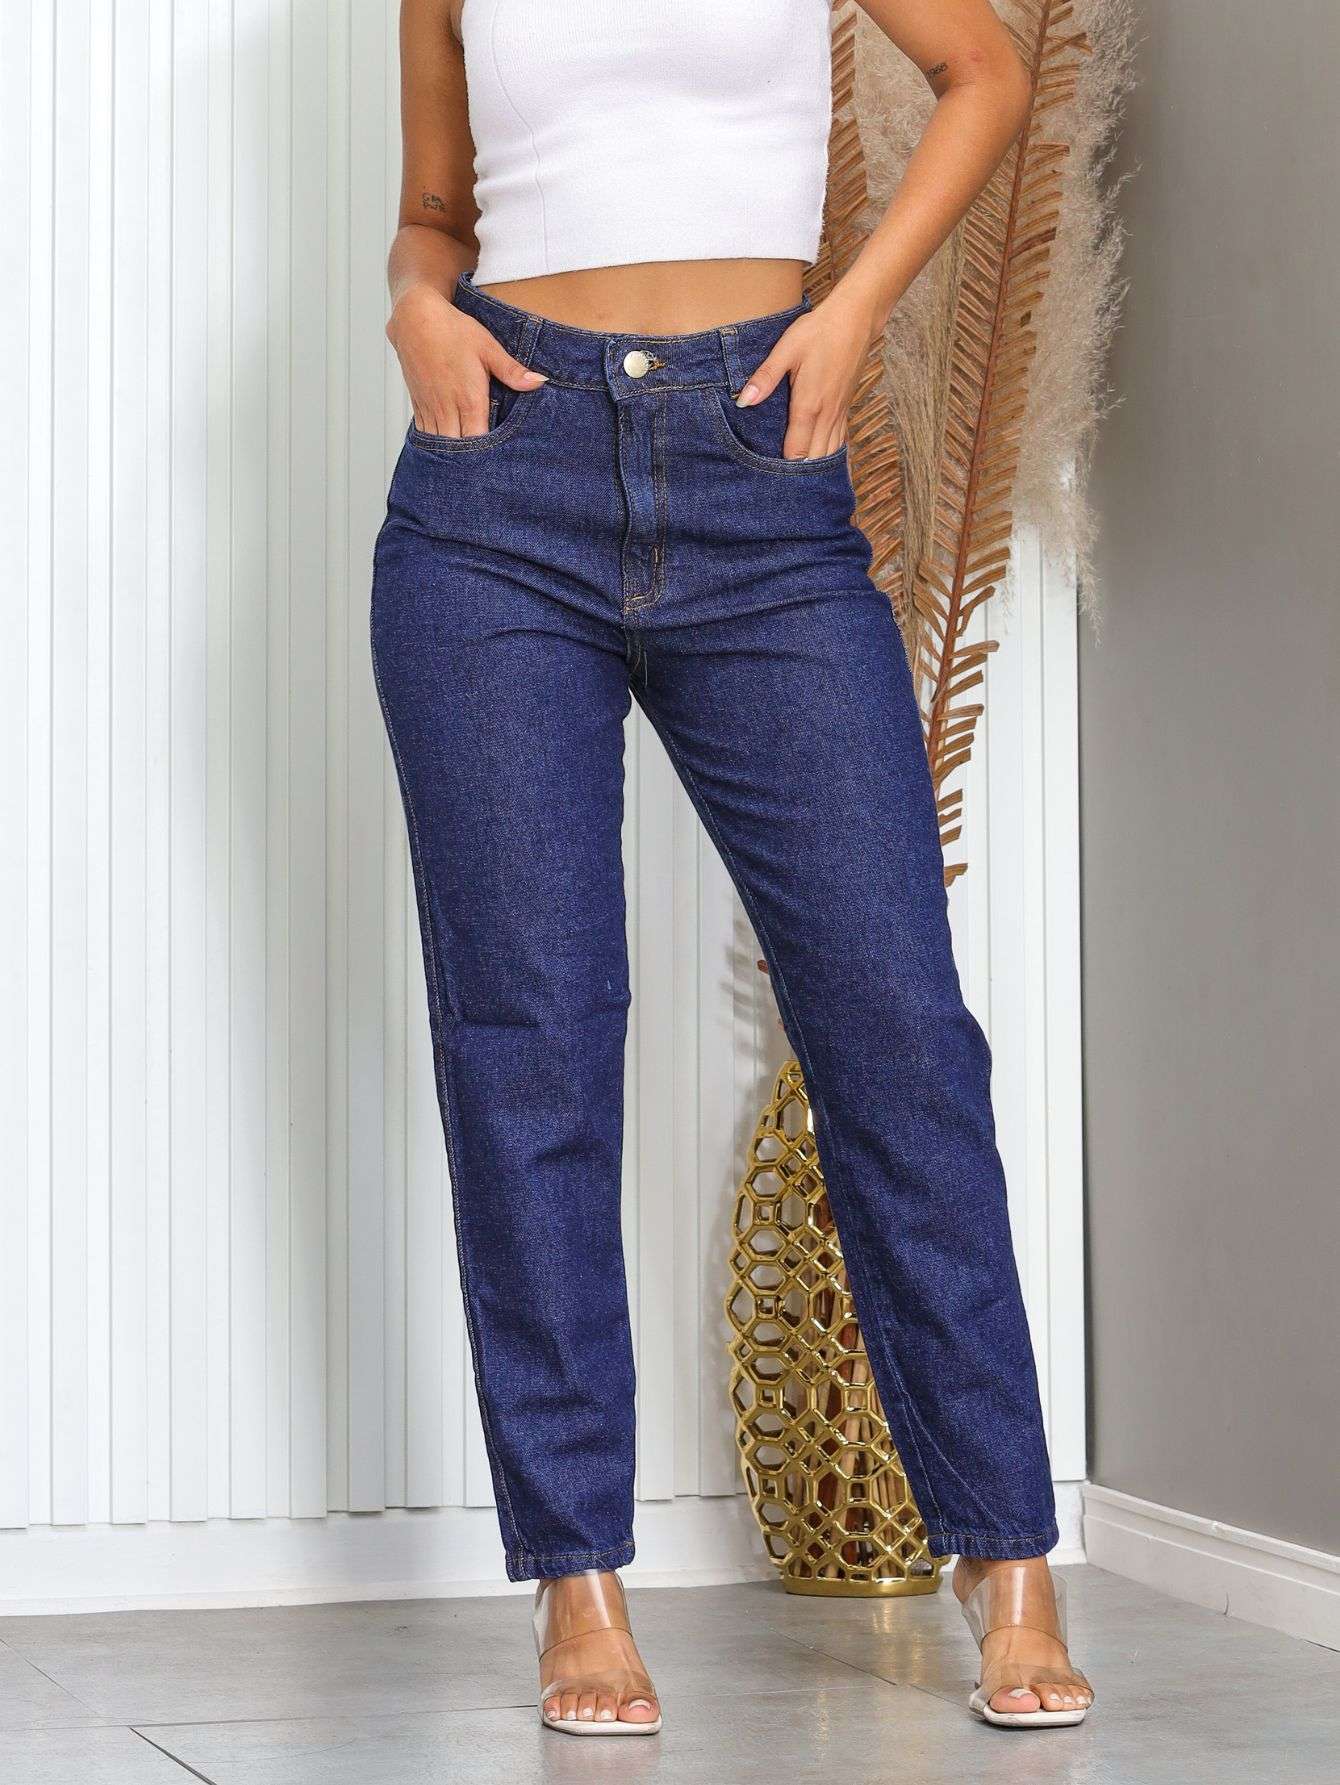 Star Boutique Calça Jeans Feminina Bailarina Flare Na Cor Jeans